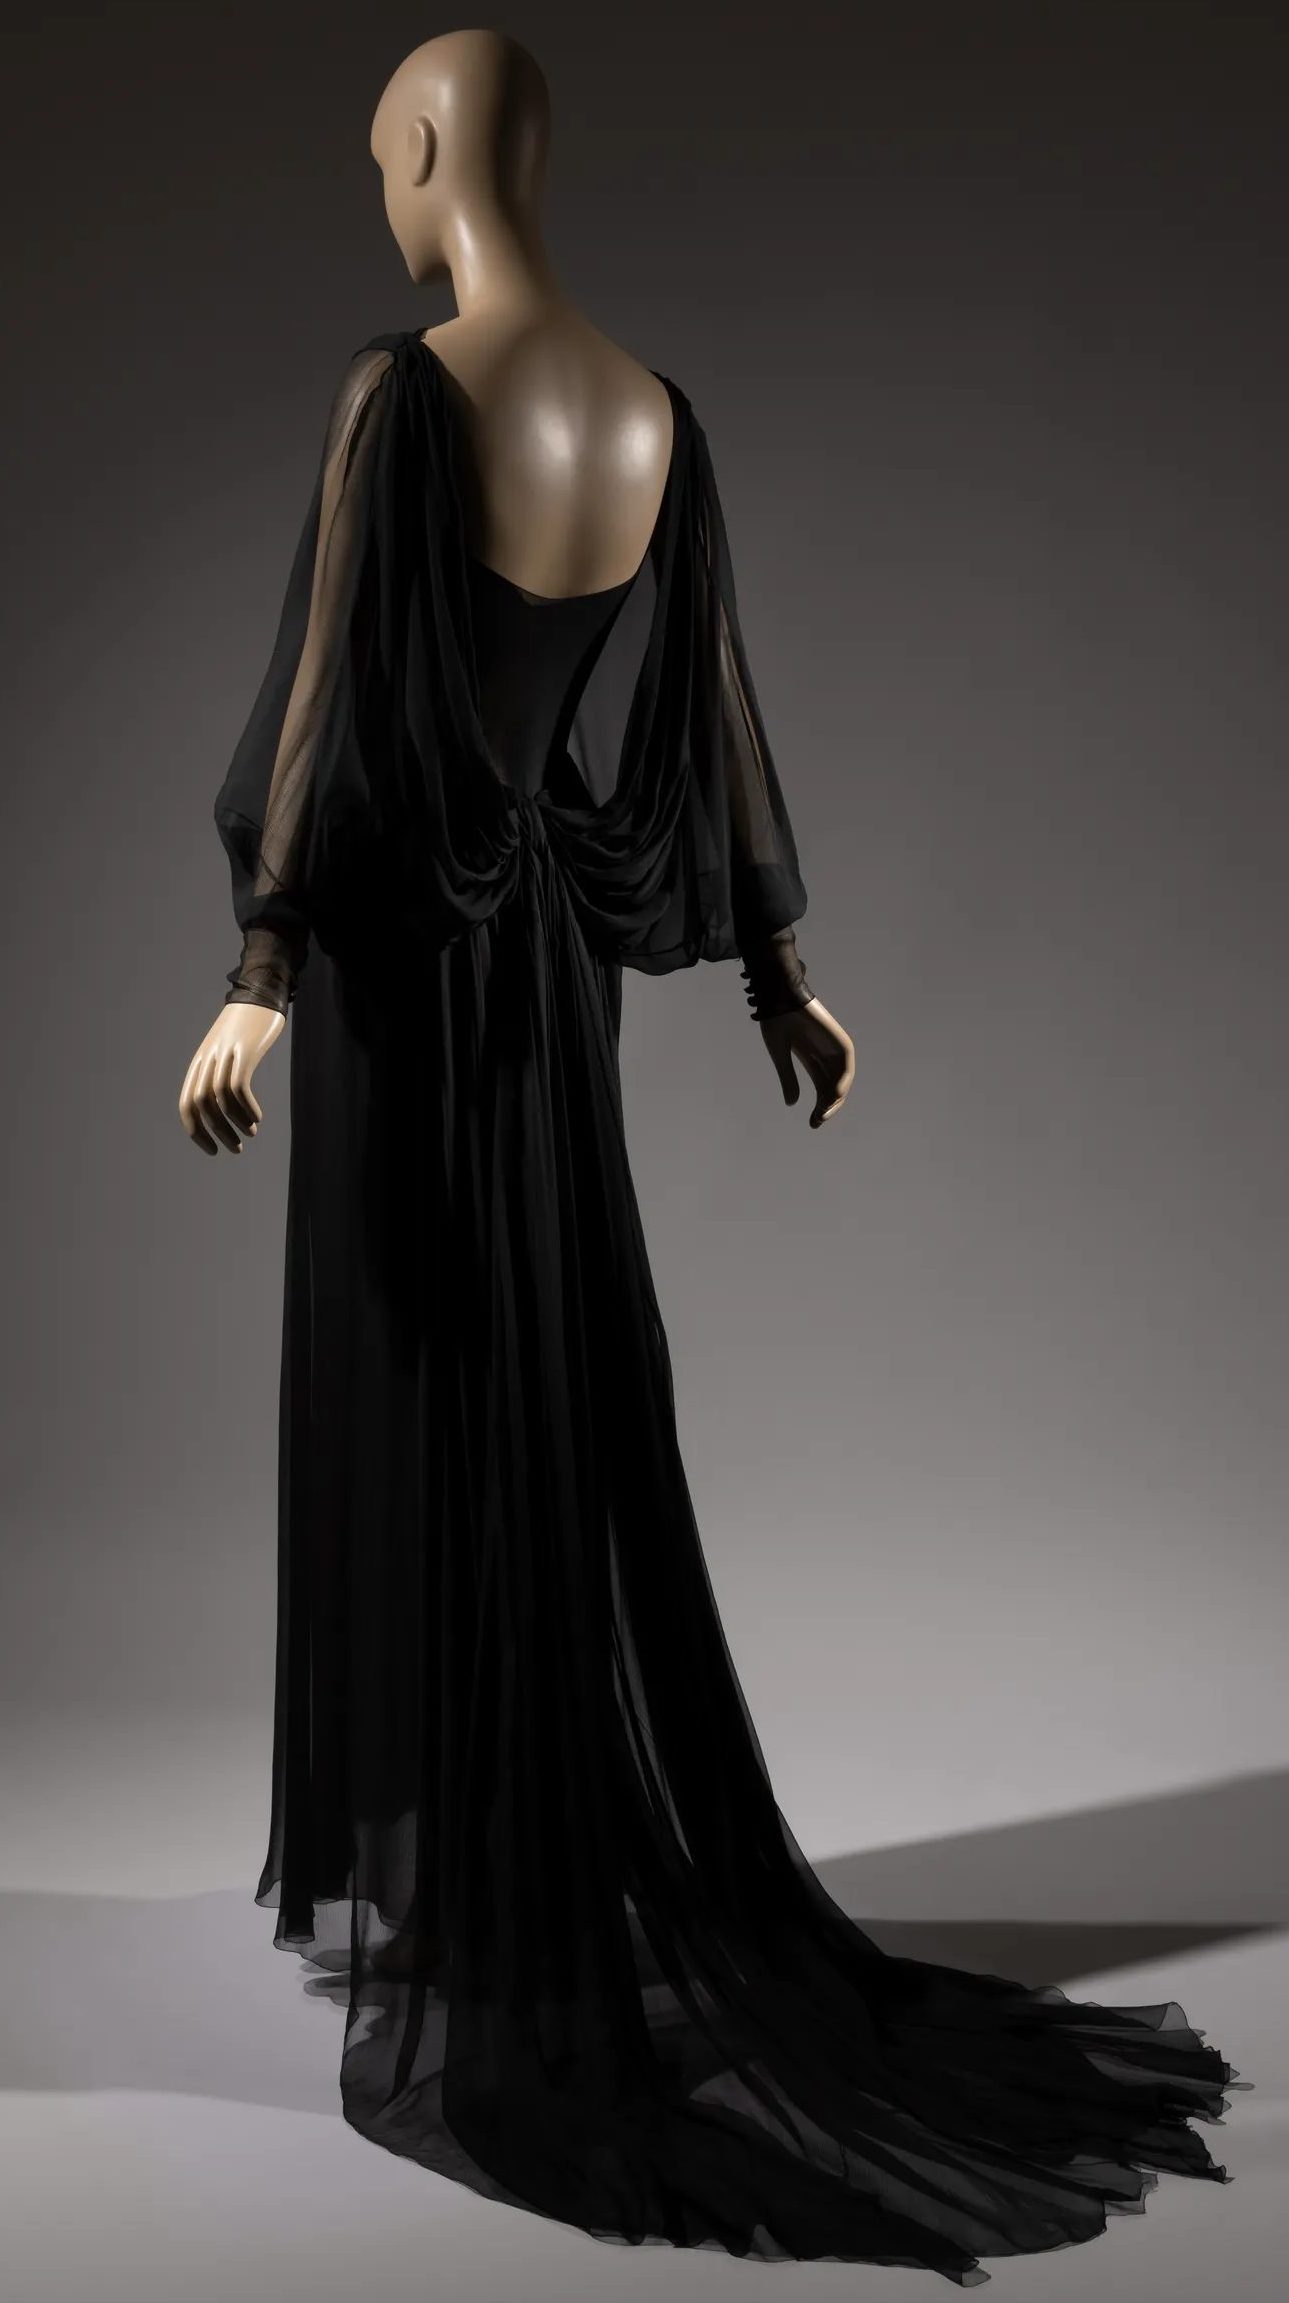 Vestido de chifón de seda negra (Marc Bohan).